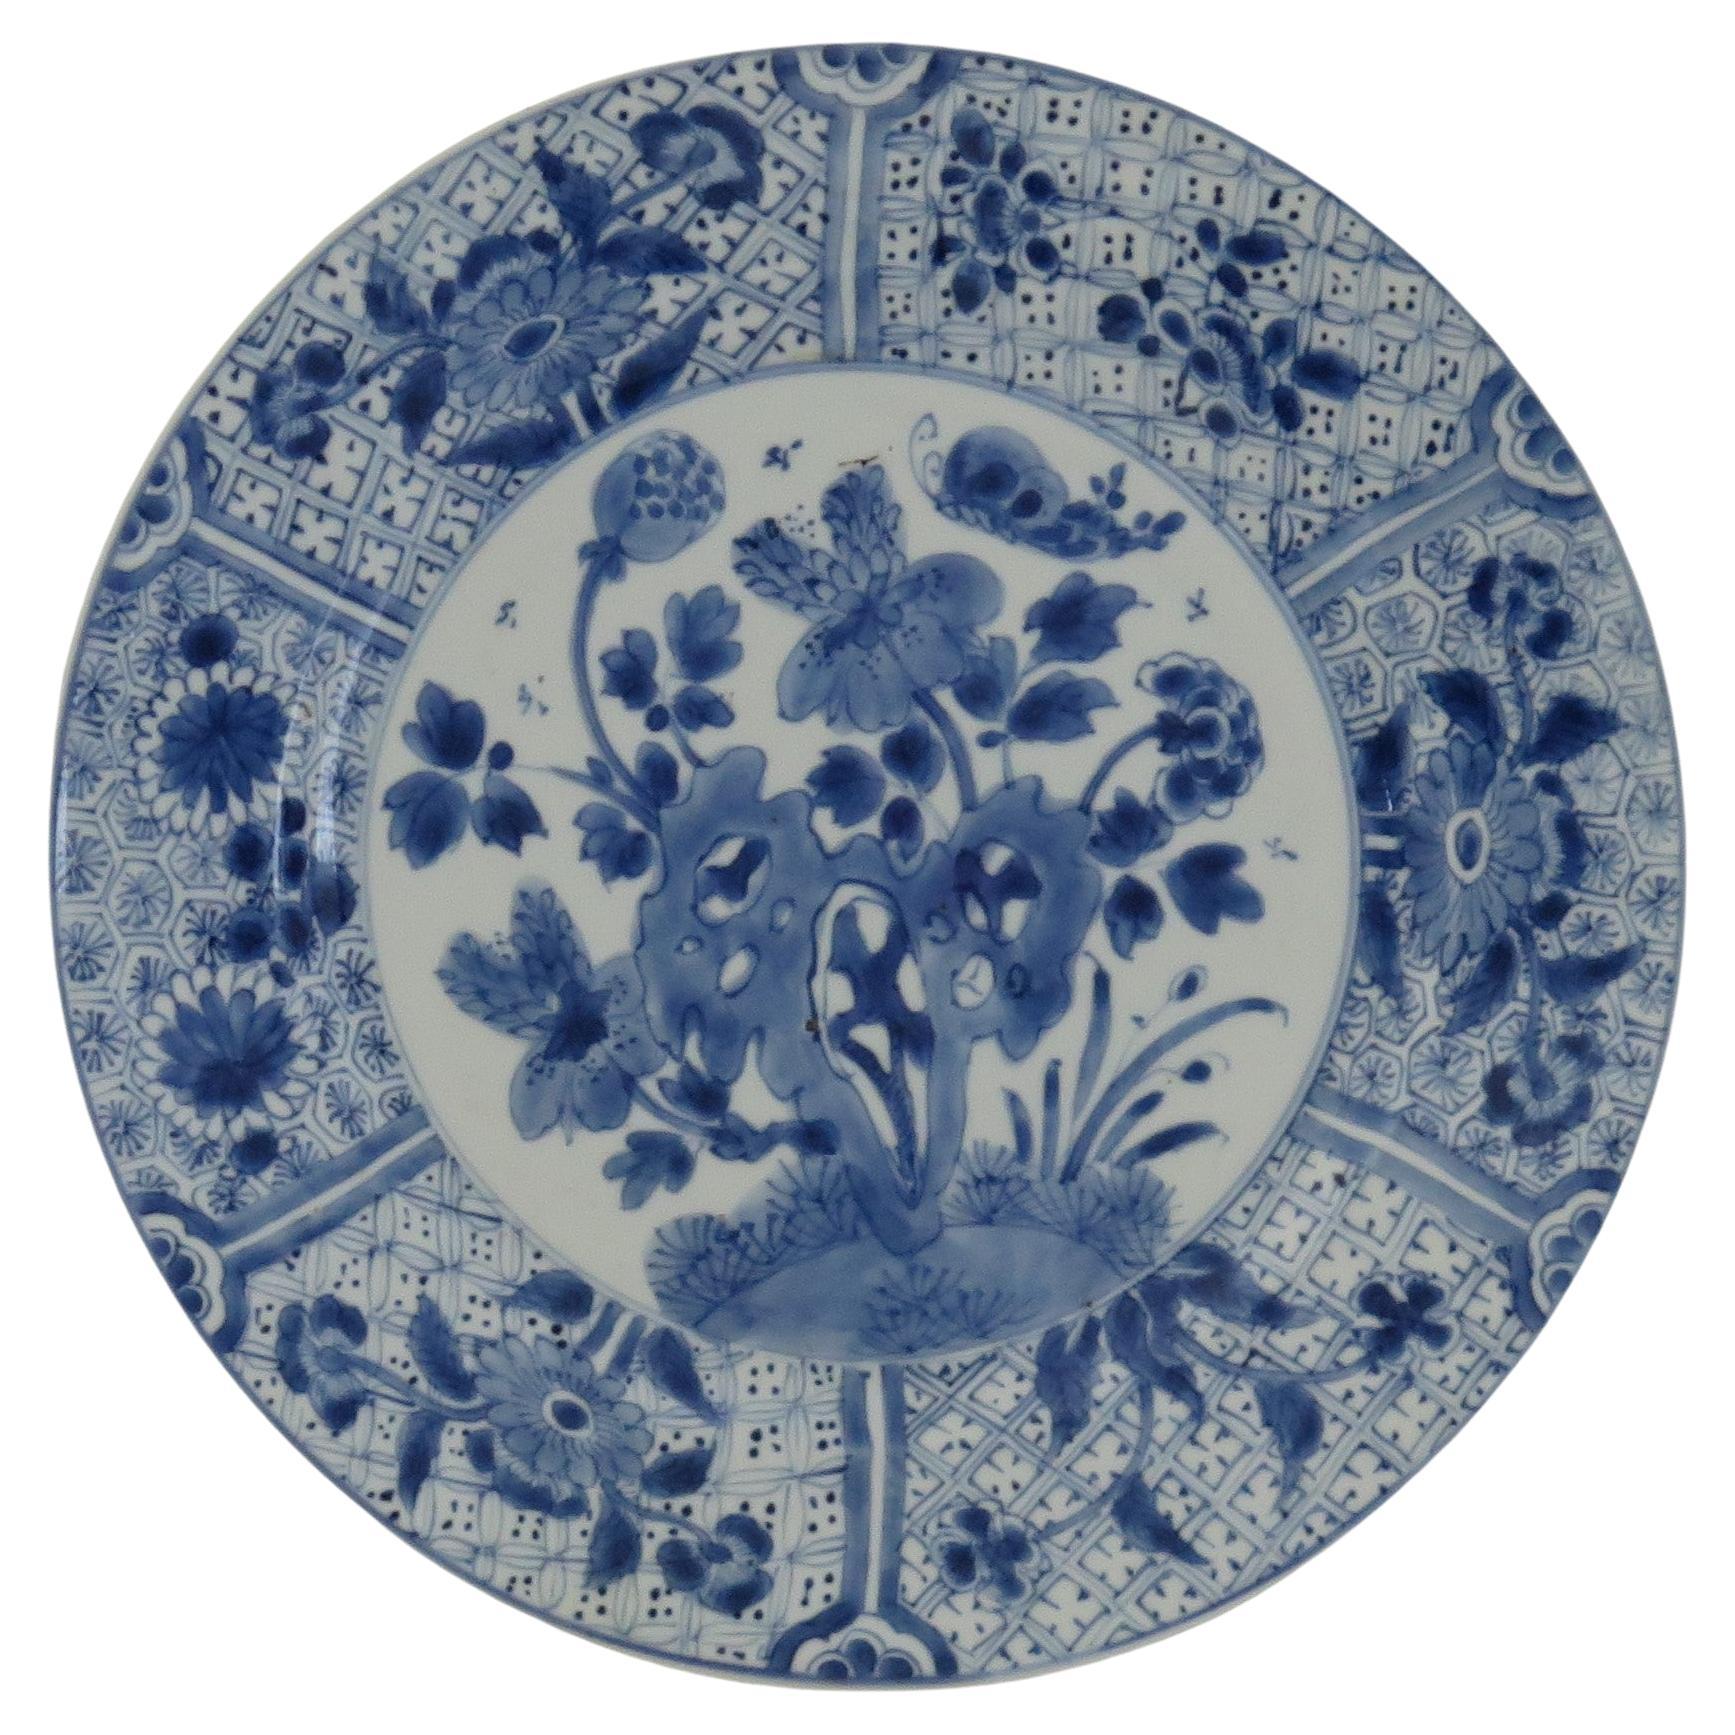 Chinesischer Kangxi-Marke und zeitgenössischer Teller oder Schale aus Porzellan in Blau und Weiß, um 1700